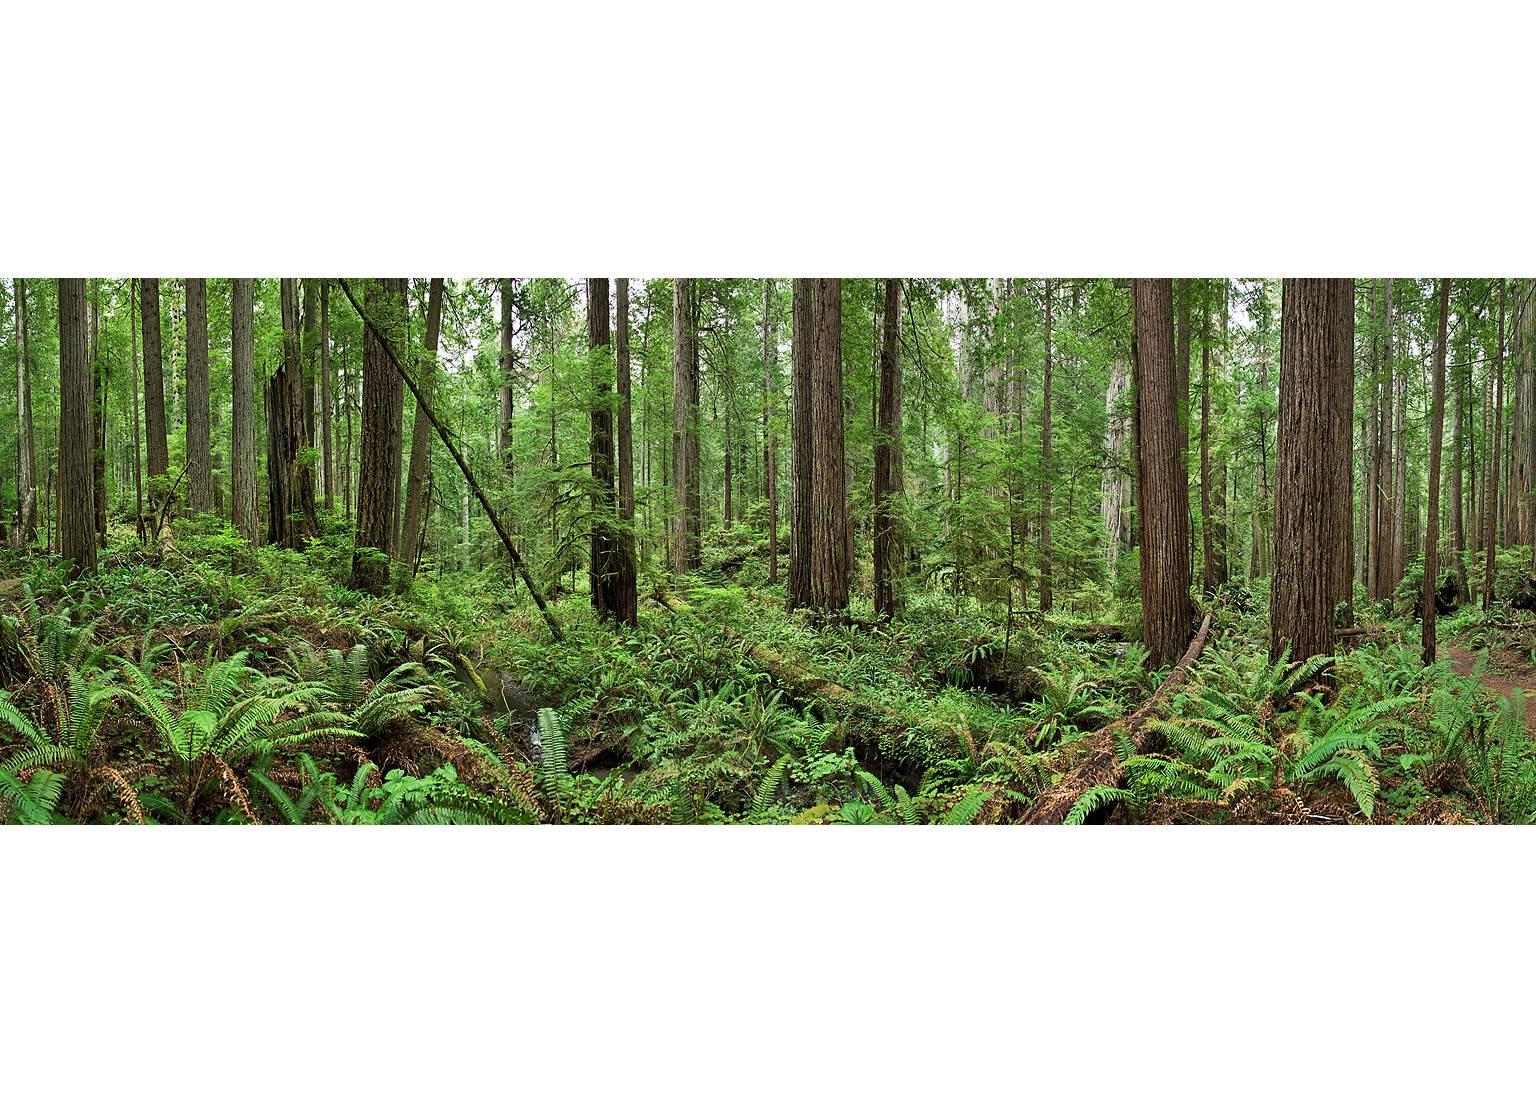 Erik Pawassar Landscape Print - Redwoods - large format nature observation panorama of green redwoods forest